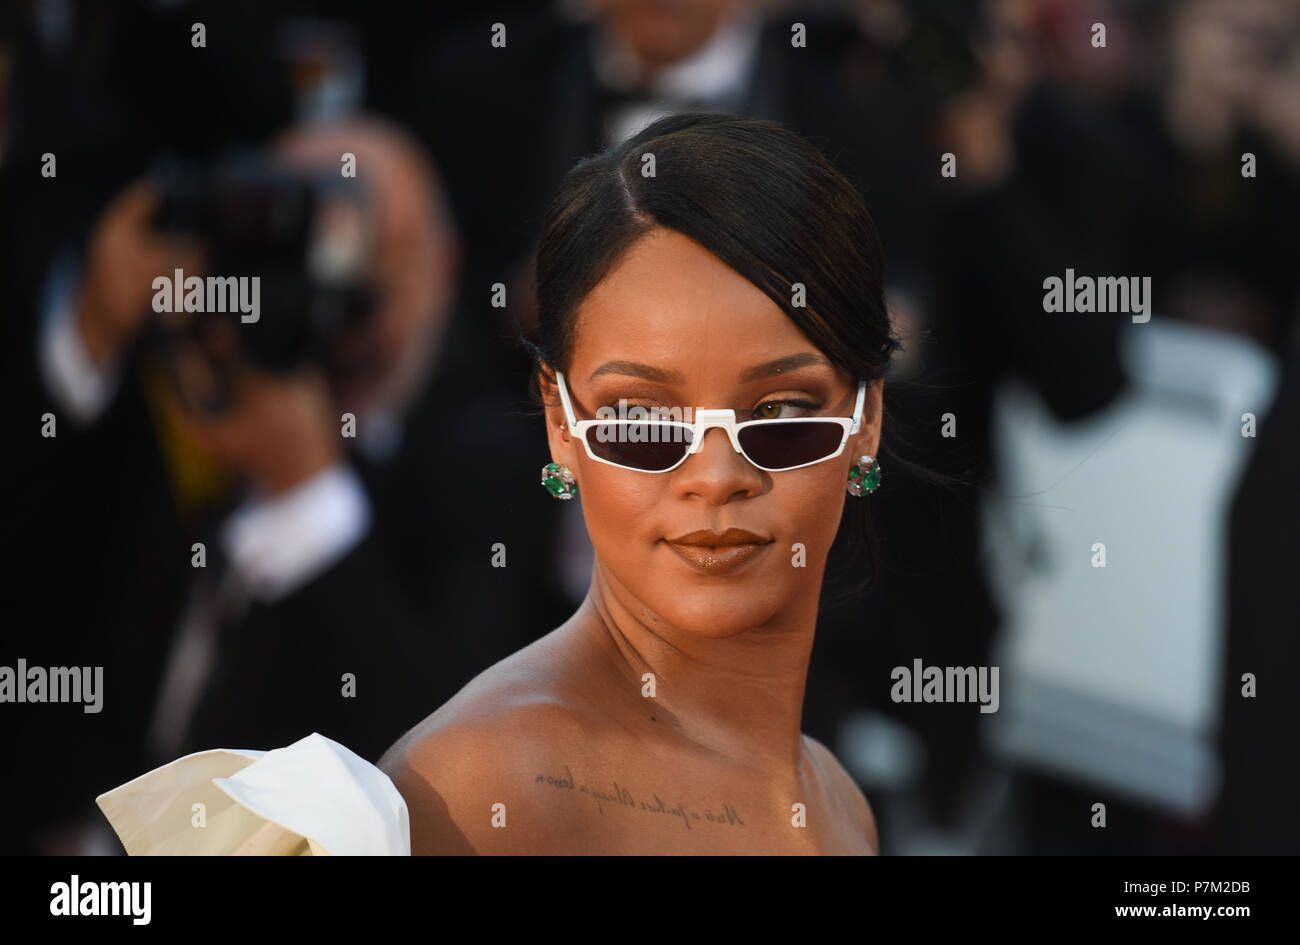 Mai 19, 2017 - Cannes, Frankreich: Rihanna besucht die 'Okja" Premiere während des 70. Filmfestival in Cannes. Rihanna lors du 70eme Festival de Cannes. *** Frankreich/KEINE VERKÄUFE IN DEN FRANZÖSISCHEN MEDIEN *** Stockfoto